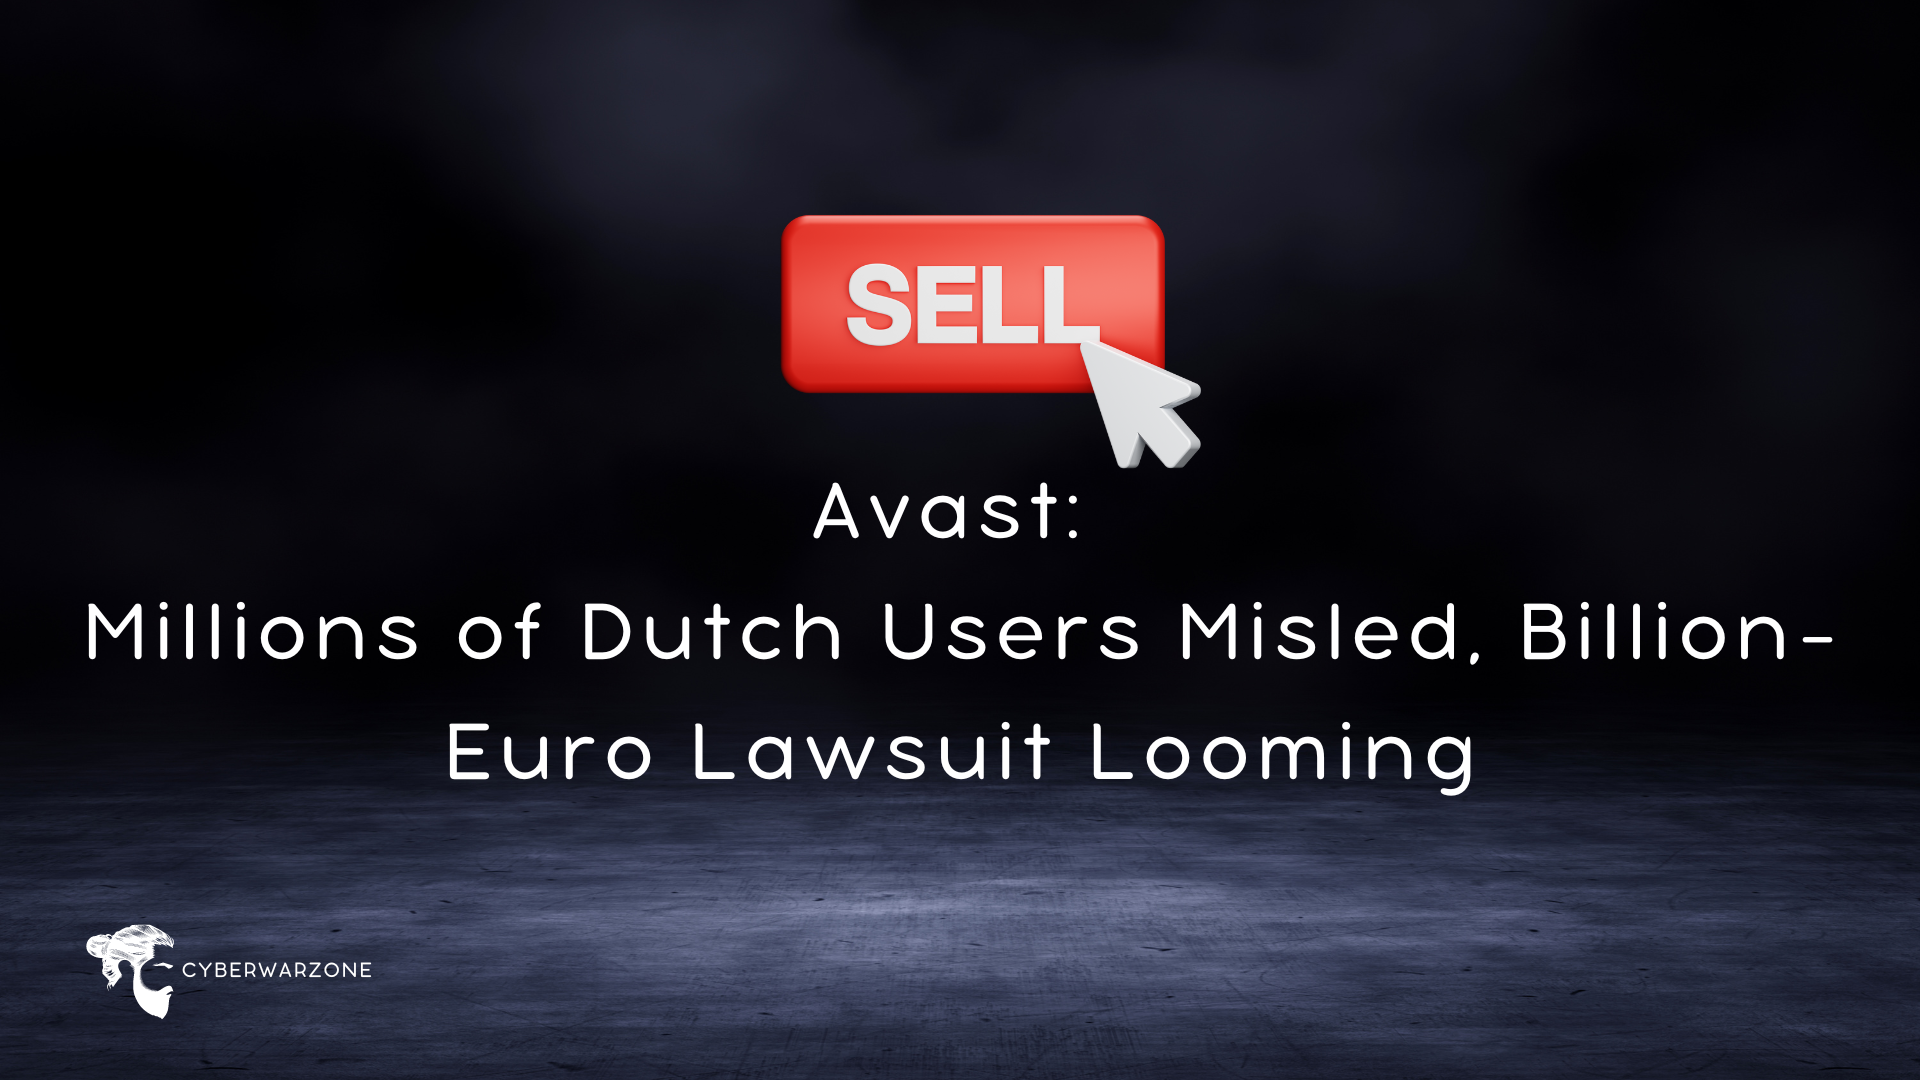 Avast: Millions of Dutch Users Misled, Billion-Euro Lawsuit Looming